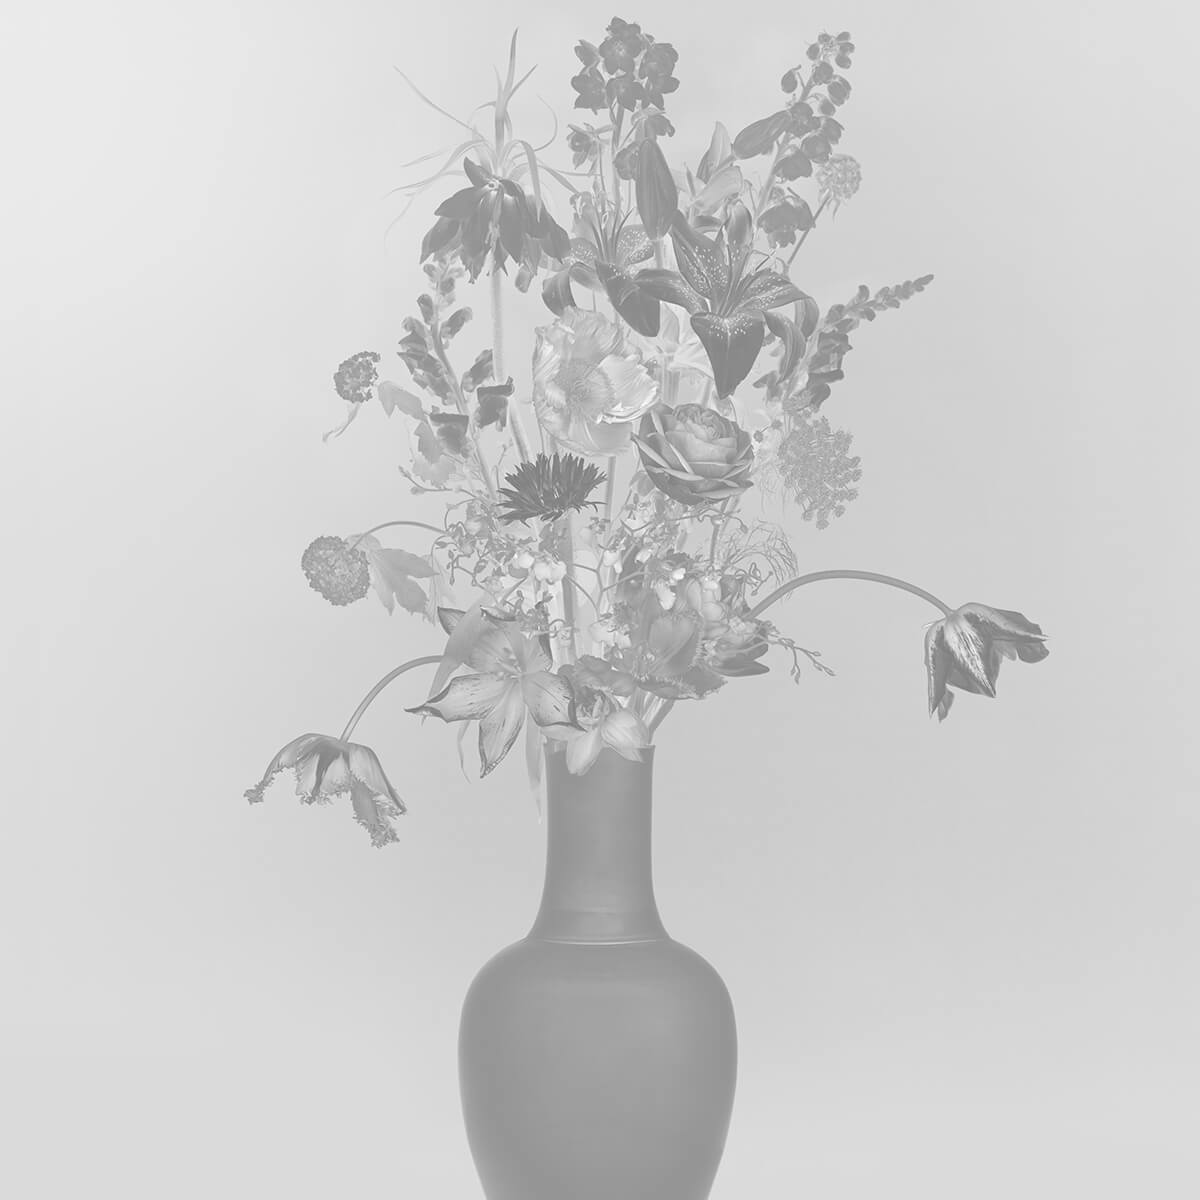 Généreux bouquet de fleurs noir et blanc